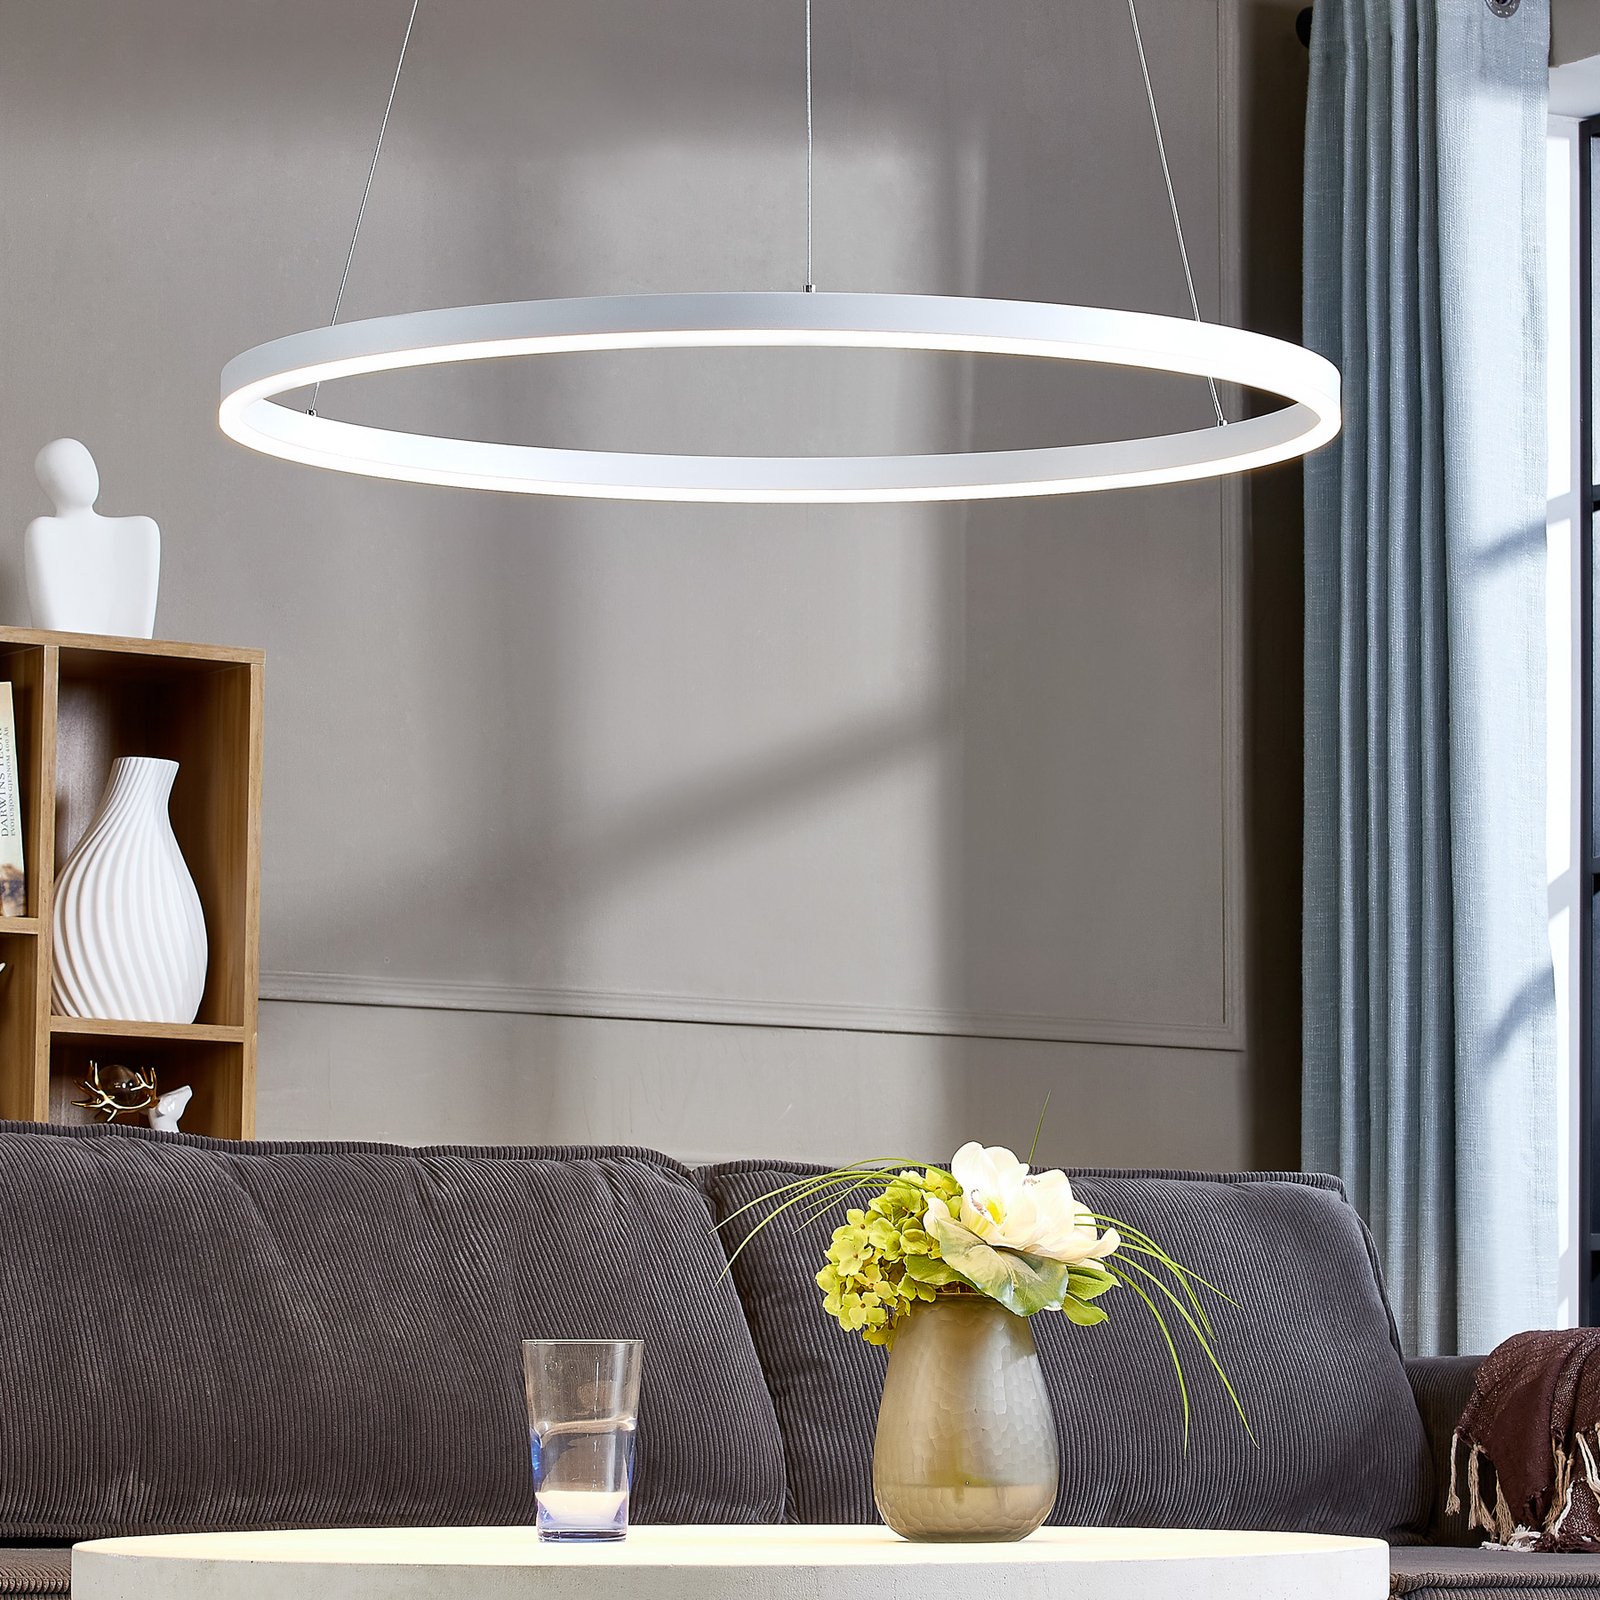 Lampa wisząca LED Arcchio Albiona, biała, 80 cm